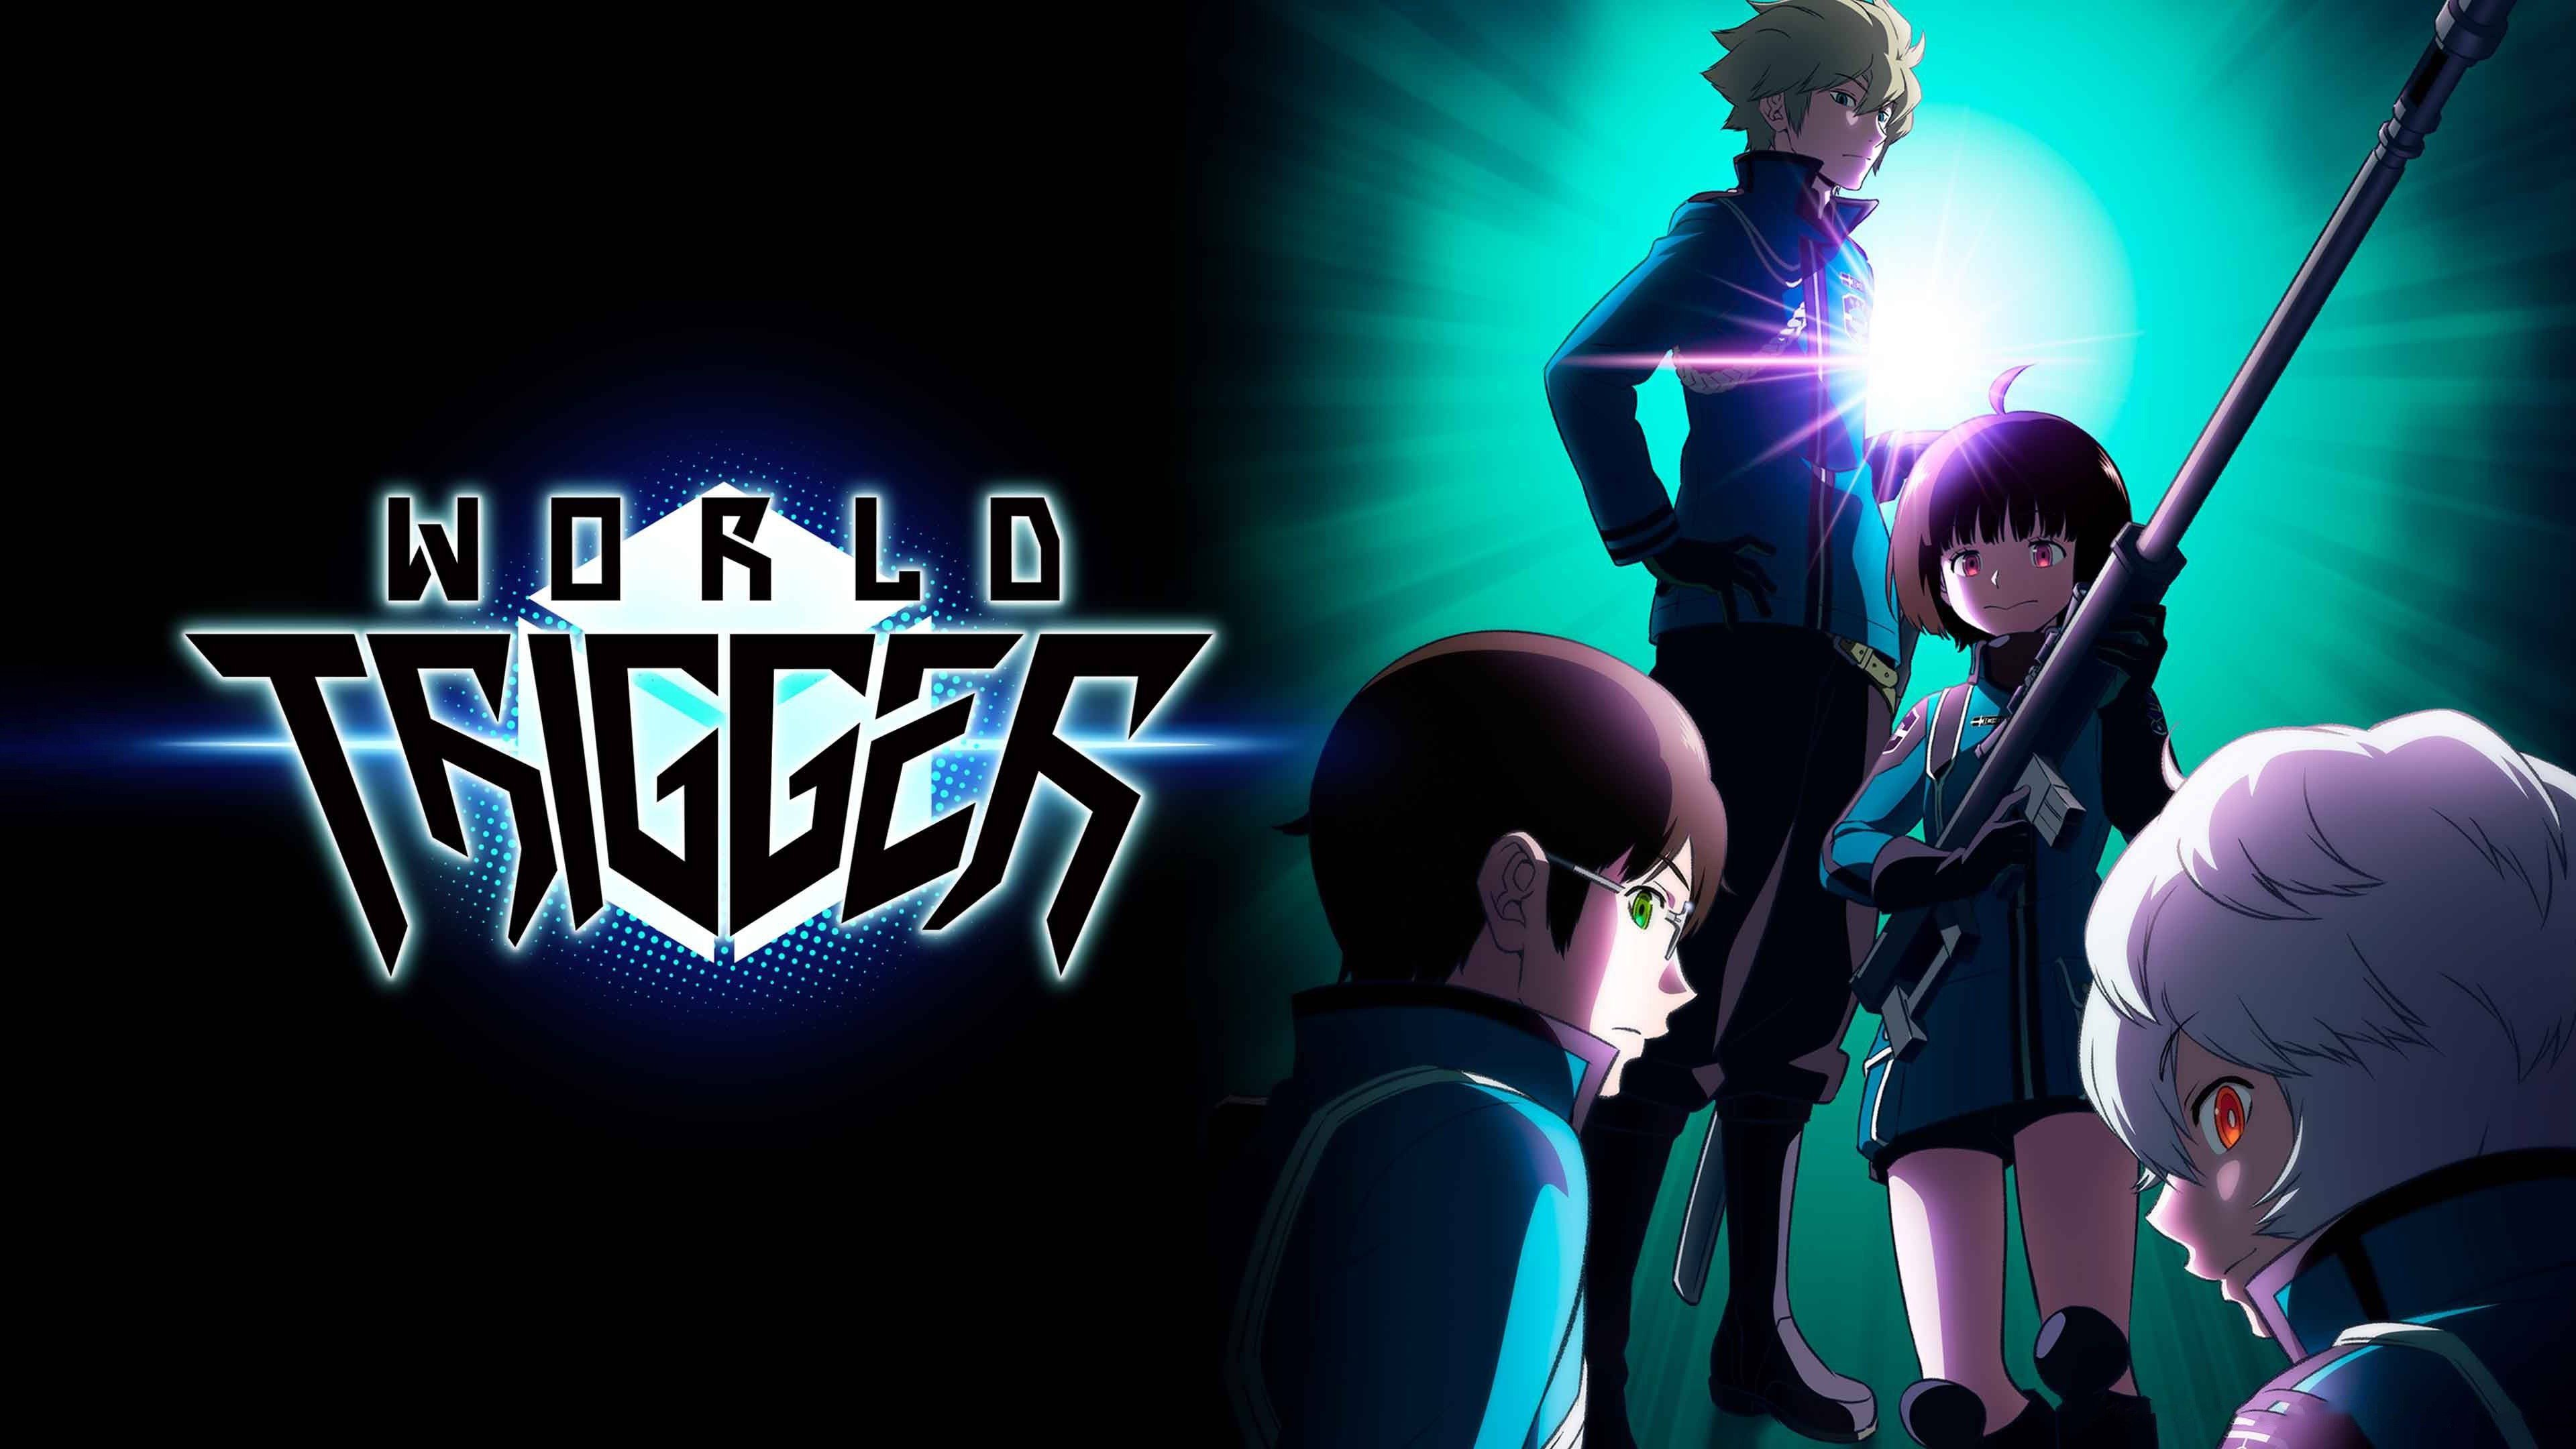  World Trigger : Hongo, Mitsuru, Hongo, Mitsuru: Movies & TV